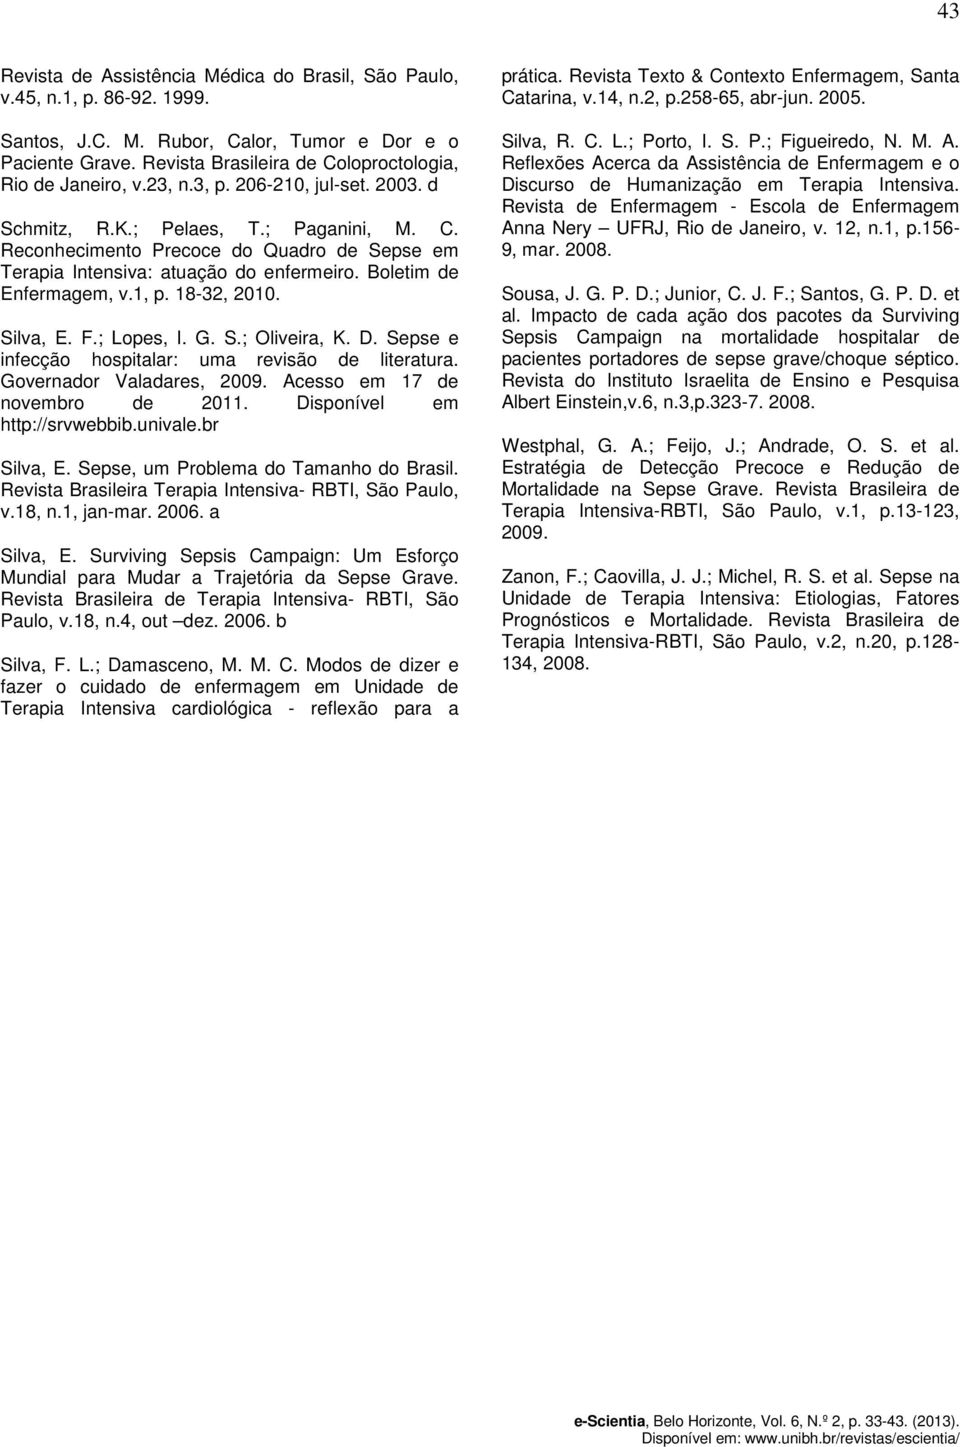 Boletim de Enfermagem, v.1, p. 18-32, 2010. Silva, E. F.; Lopes, I. G. S.; Oliveira, K. D. Sepse e infecção hospitalar: uma revisão de literatura. Governador Valadares, 2009.